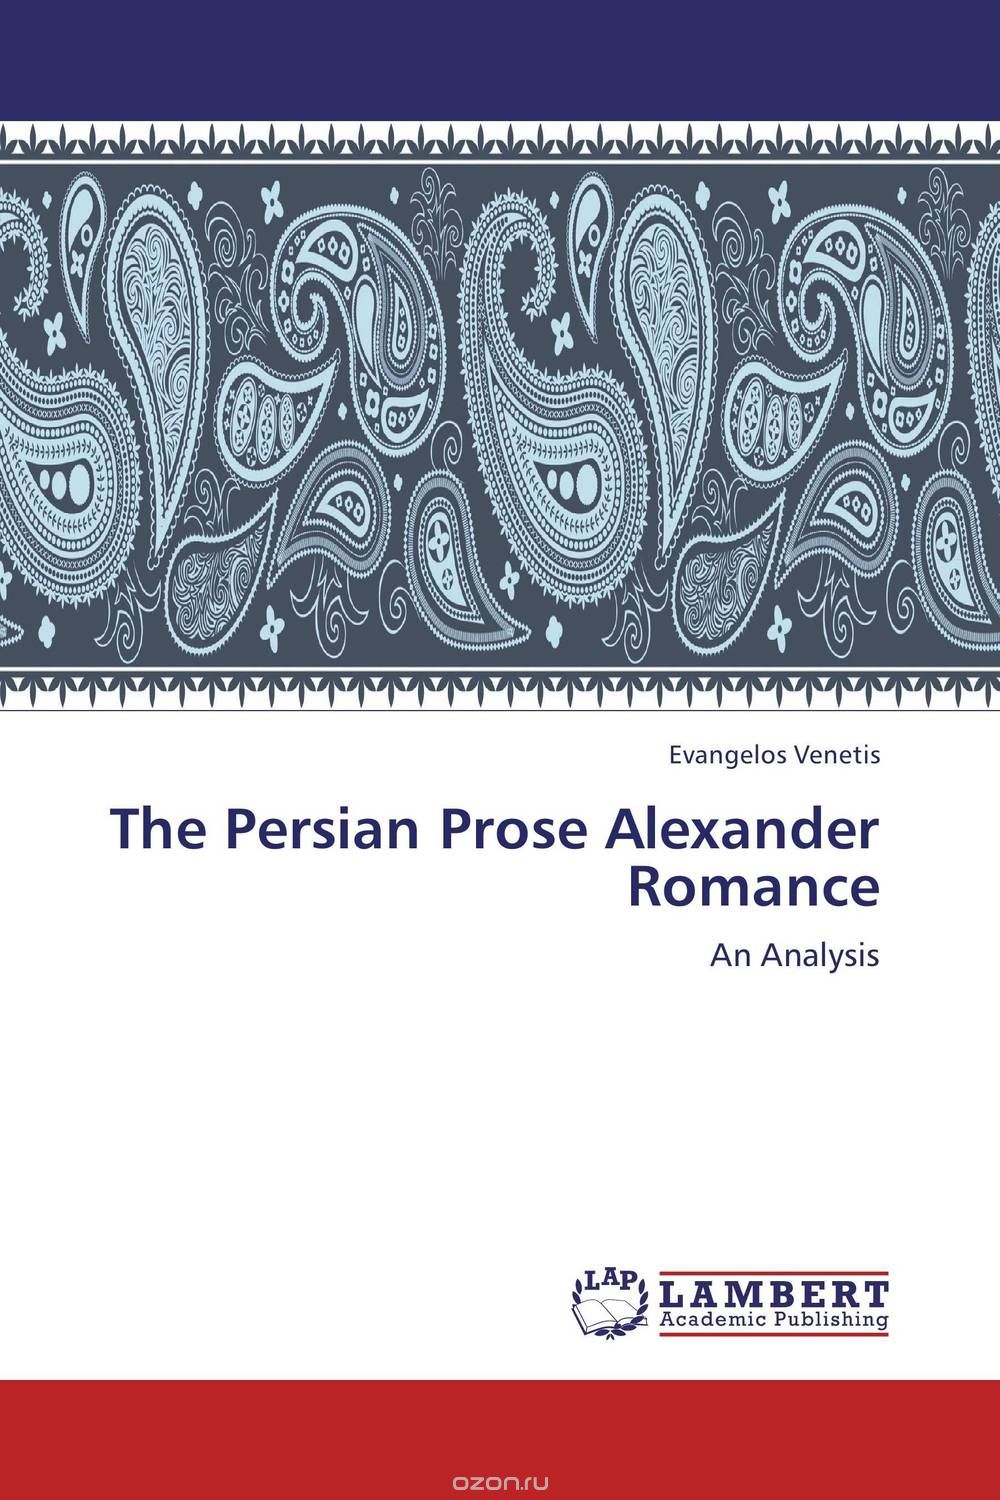 Скачать книгу "The Persian Prose Alexander Romance"